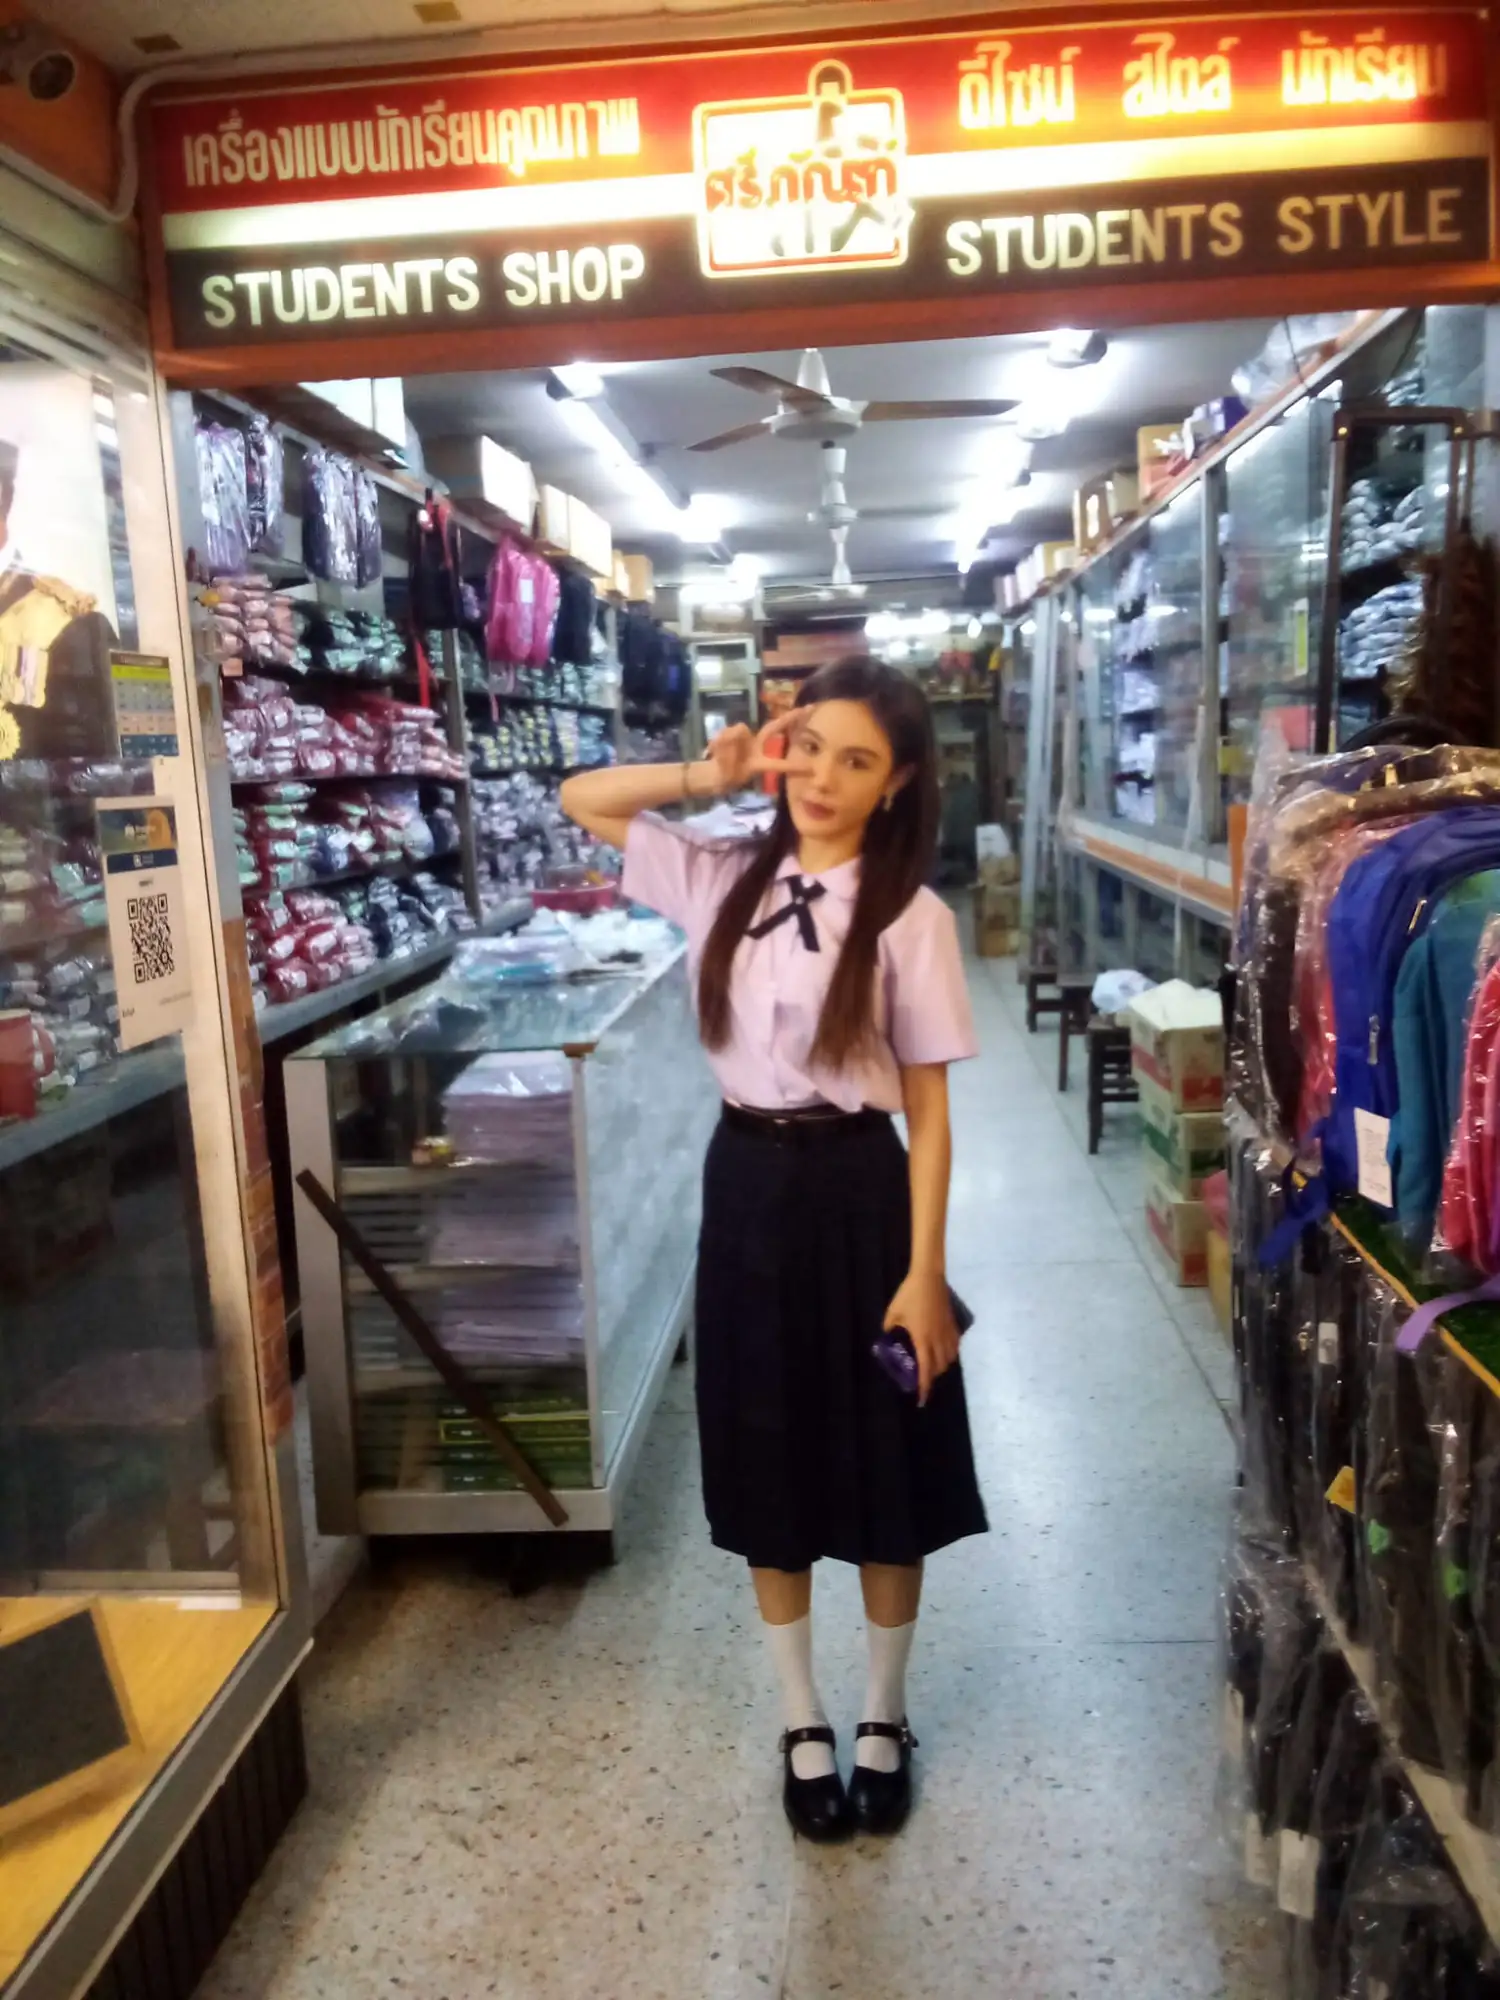 社群媒體掀起泰國校服熱潮（圖片來源：ชุดนักเรียนร้านศรีภัณฑ์臉書）